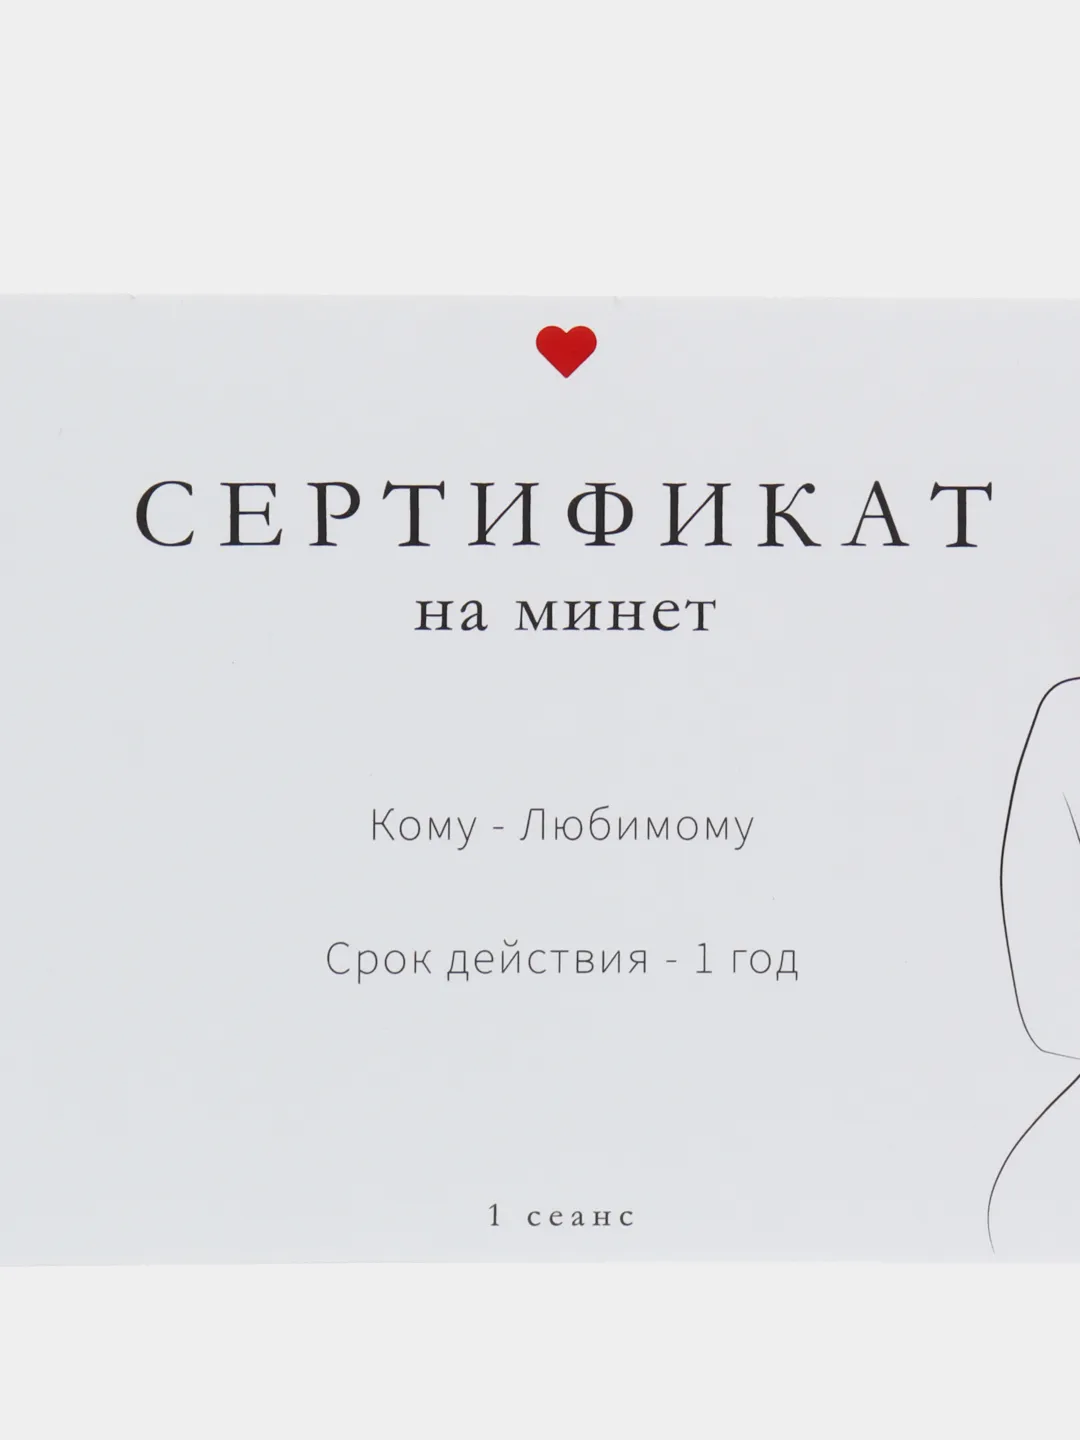 Купоны на минет – 3 фотографии | ВКонтакте